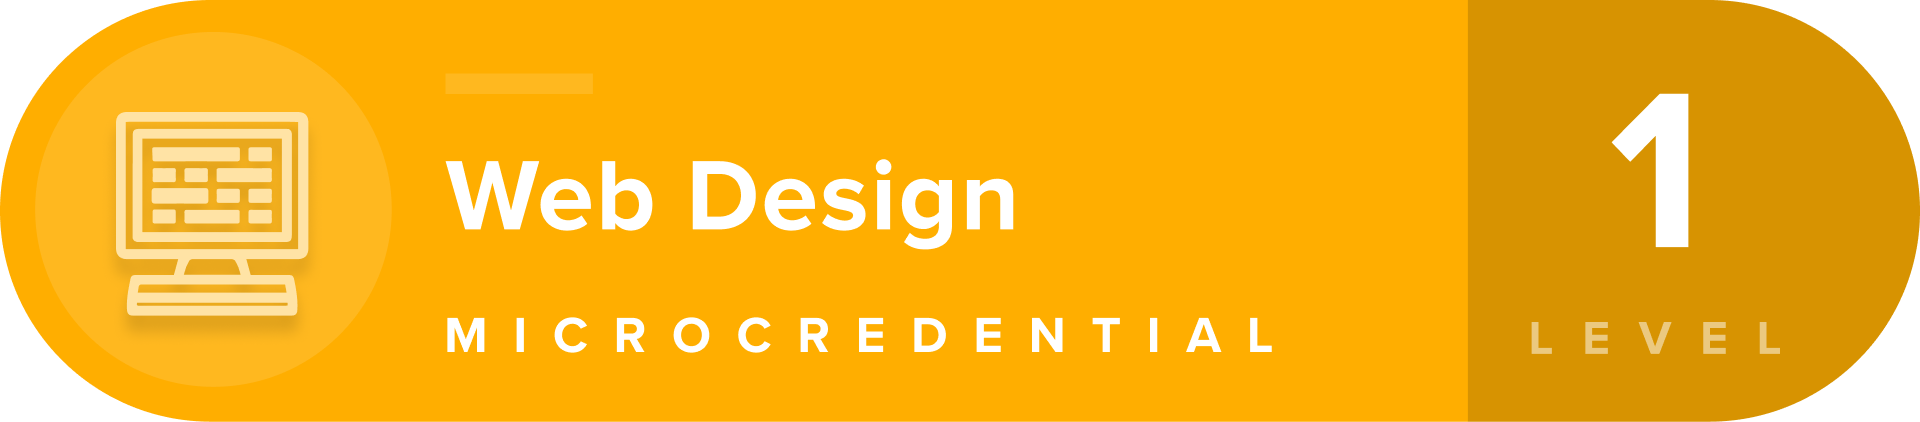 Web Design microcredentials level 1 badge